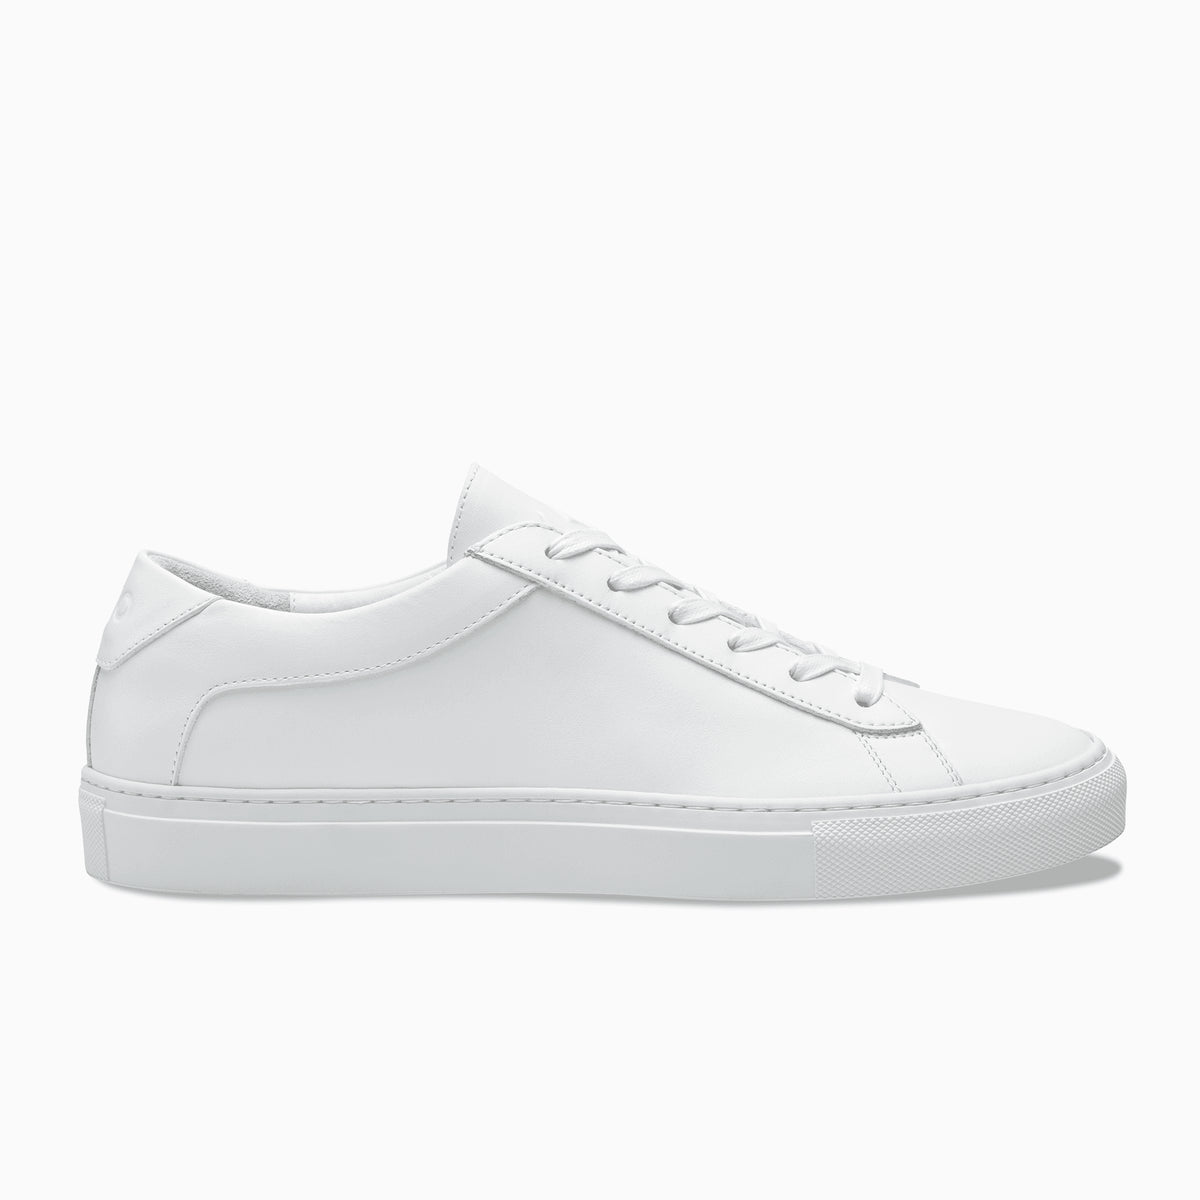 Koio Capri Men's Sneakers White | Singapore-130485